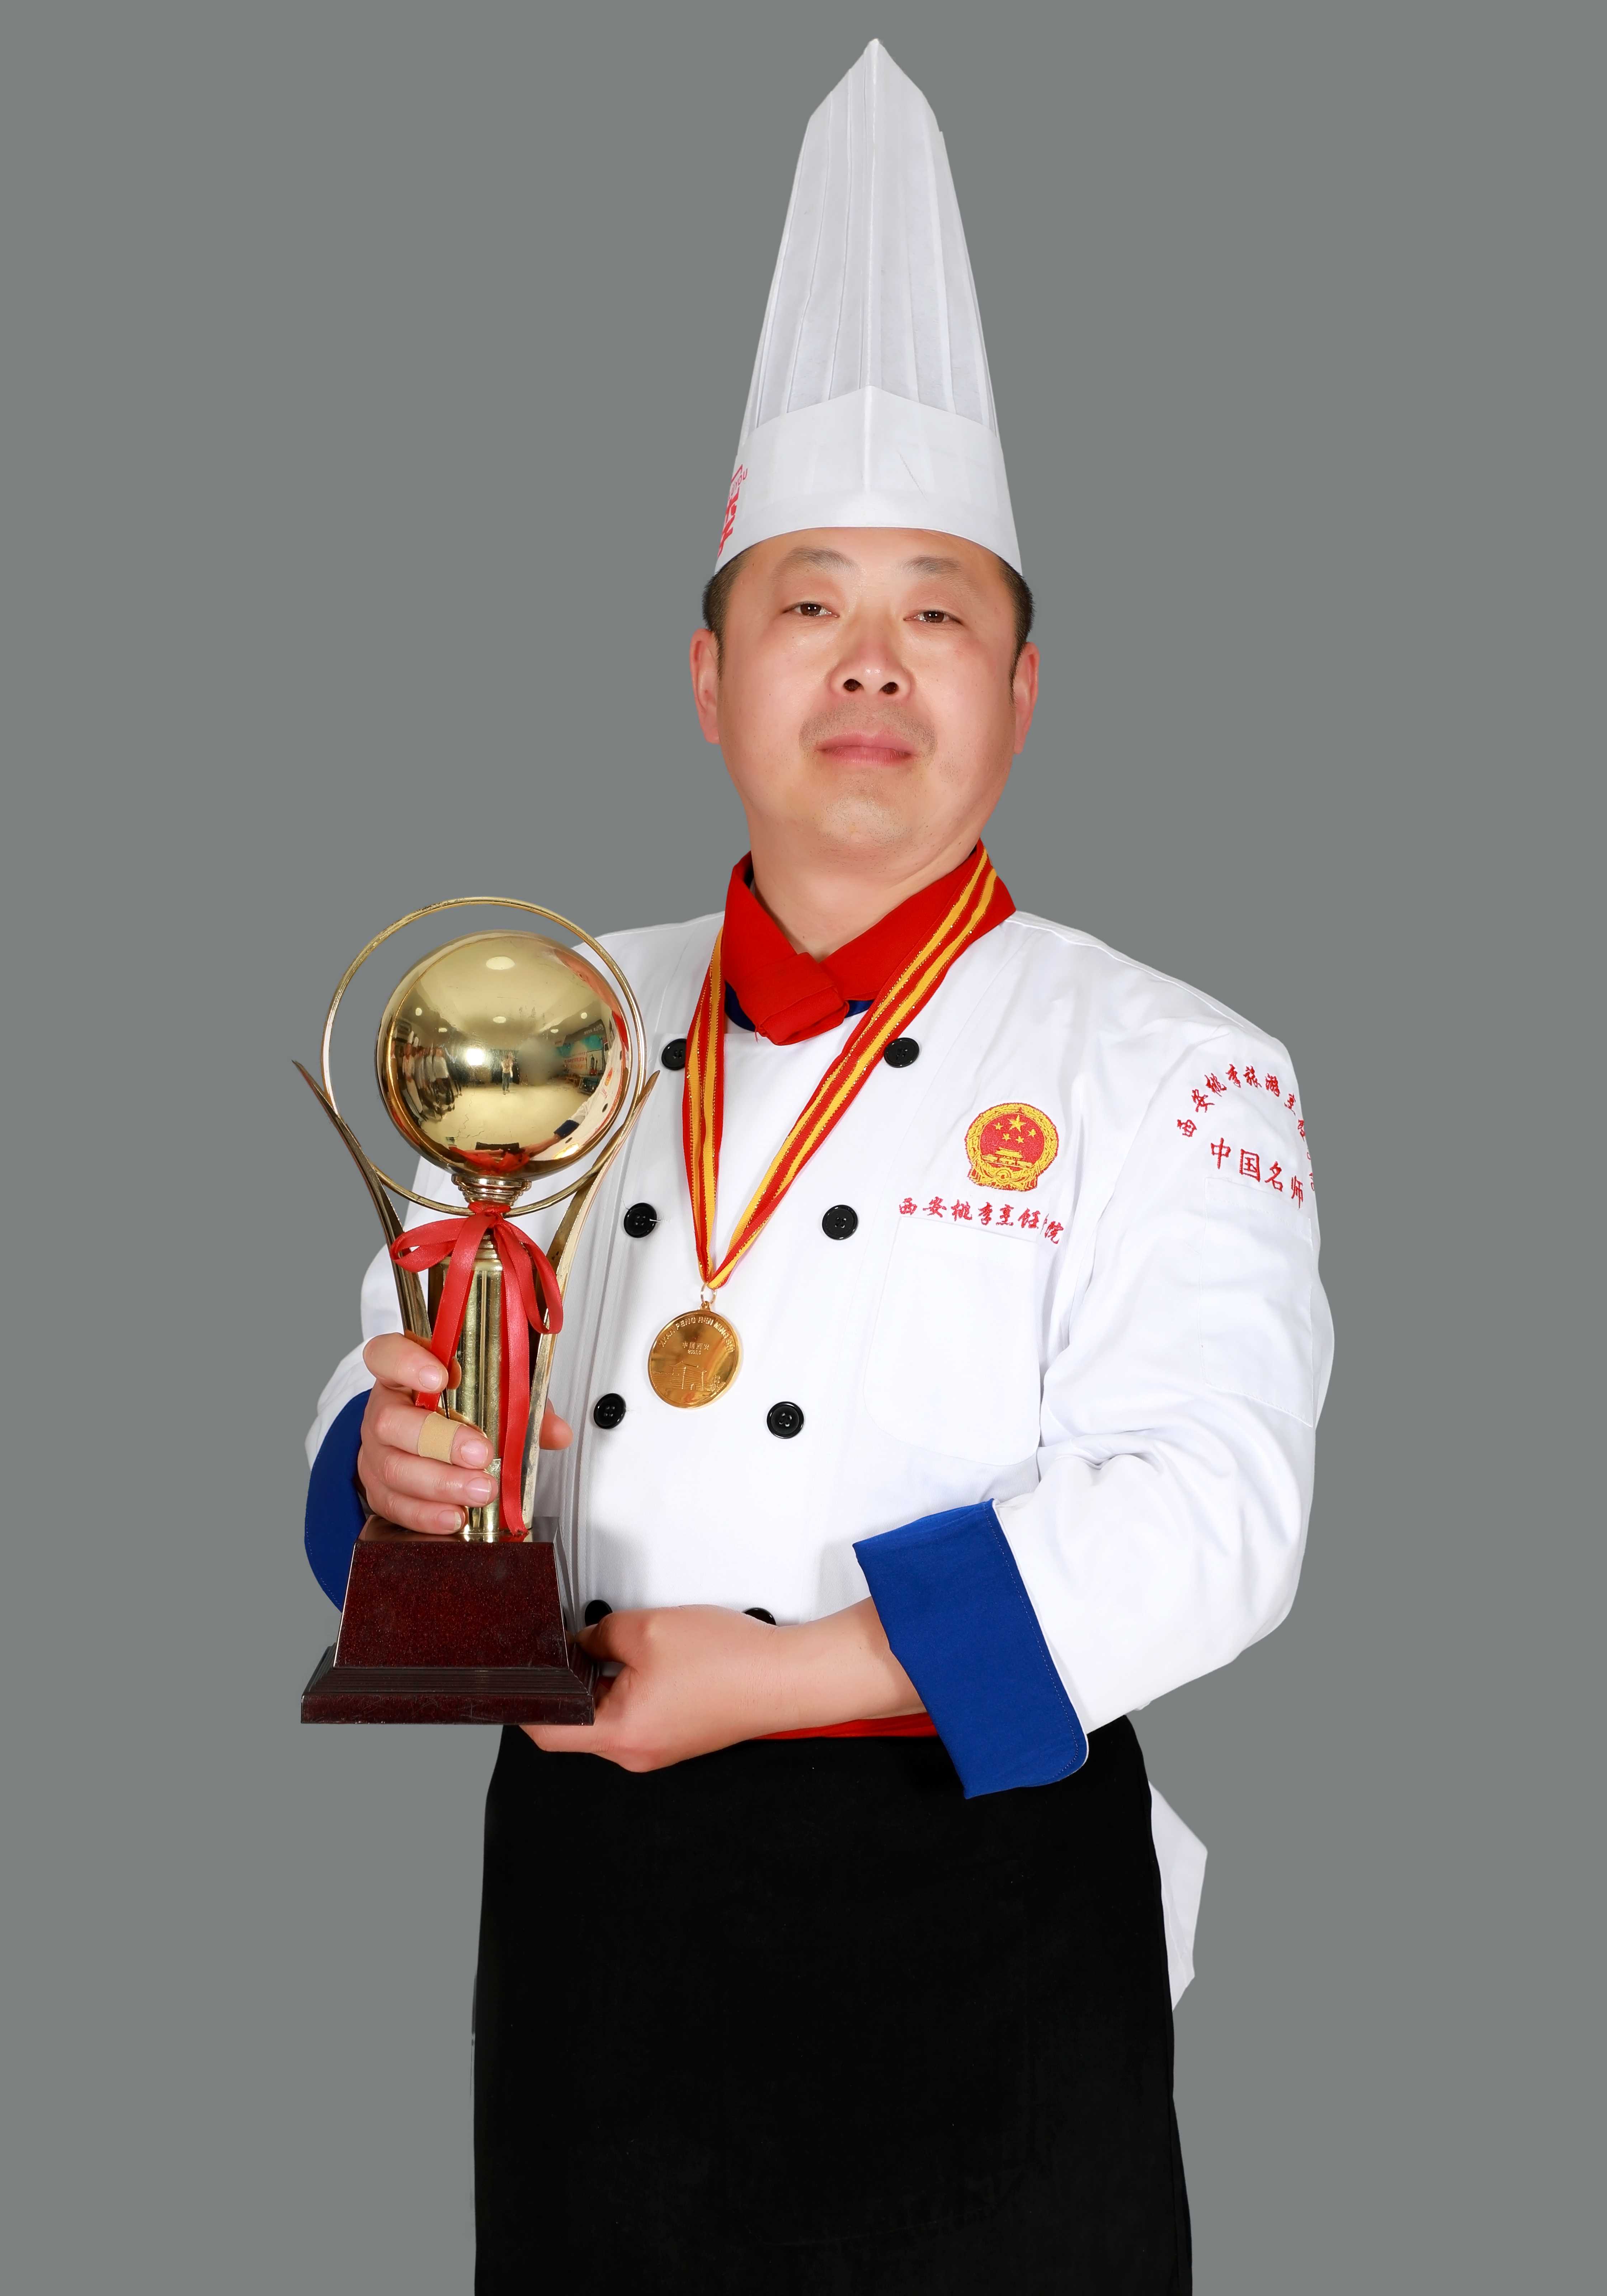 中式烹调技师，中国烹饪名师，陕西烹饪大师、西安市技术标兵。